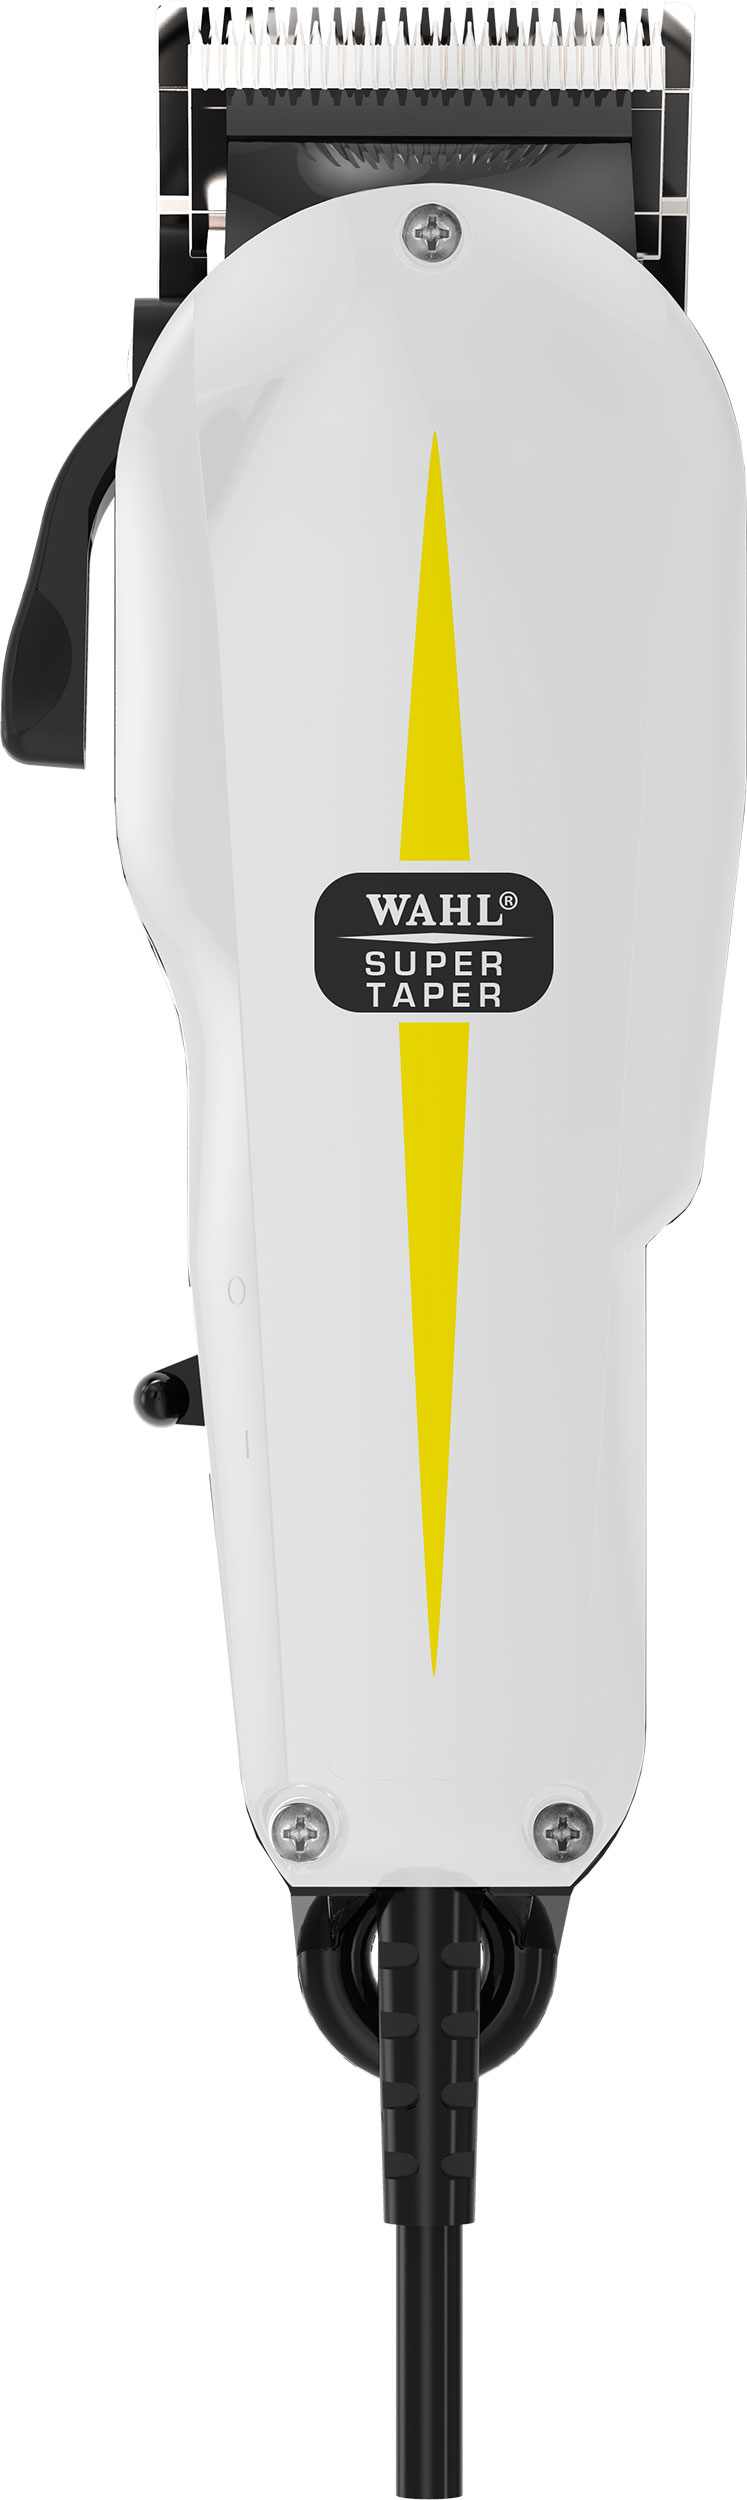 WAHL Super Taper